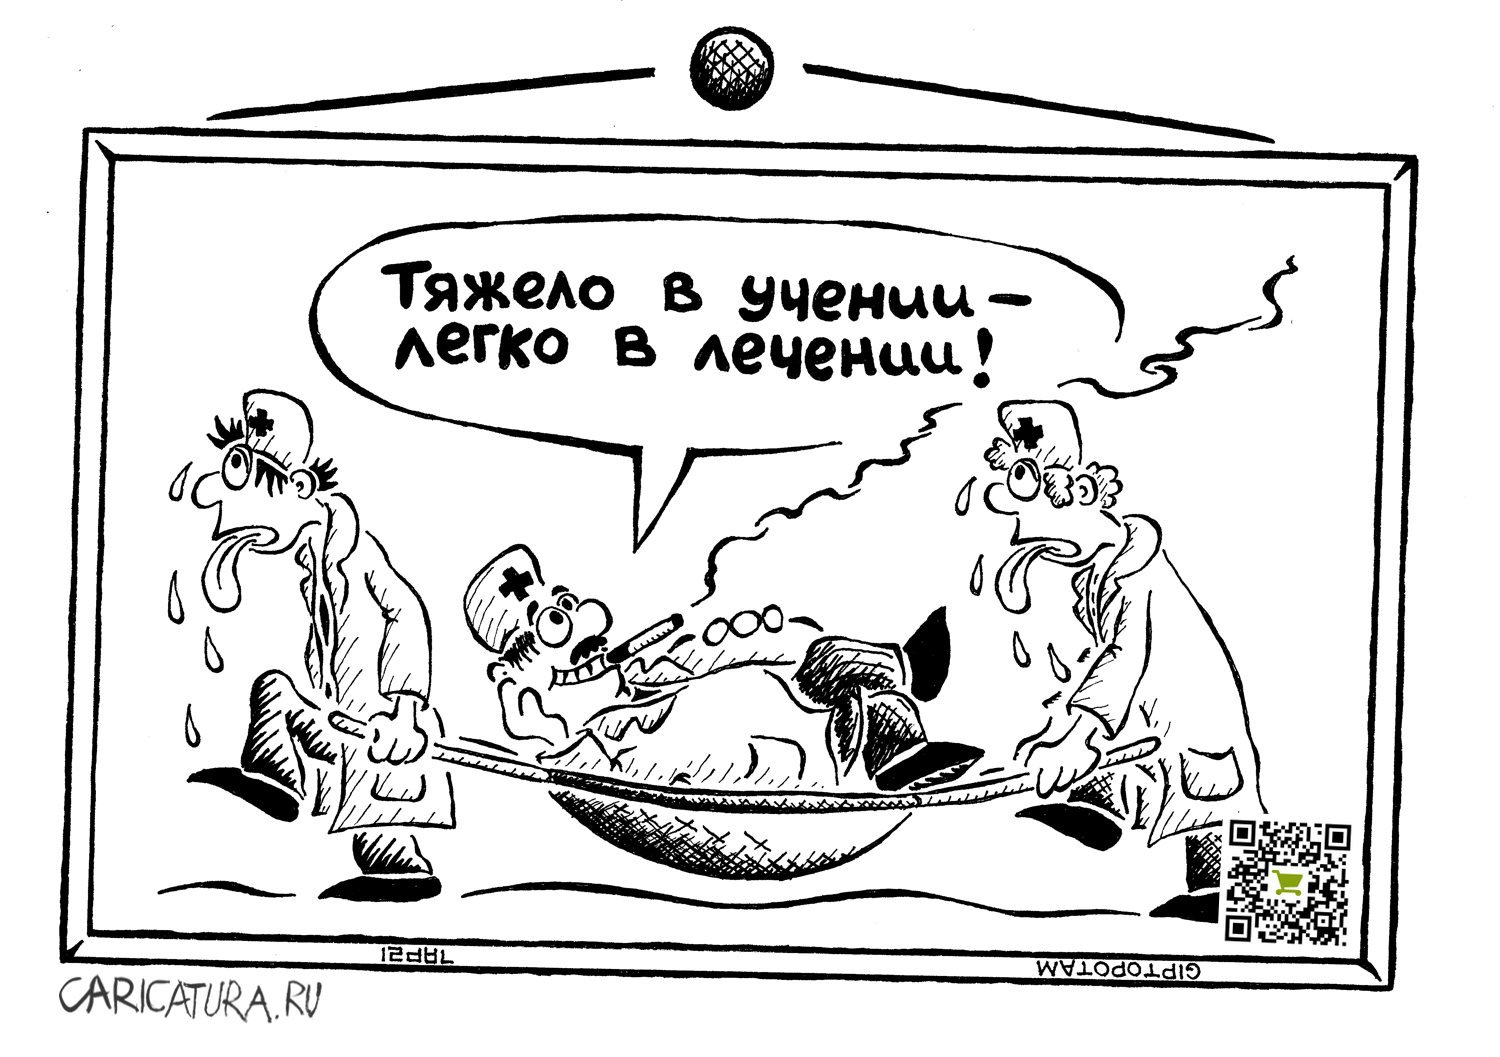 Карикатура "В здоровом теле - здоровый ду...ст", Александр Евангелистов